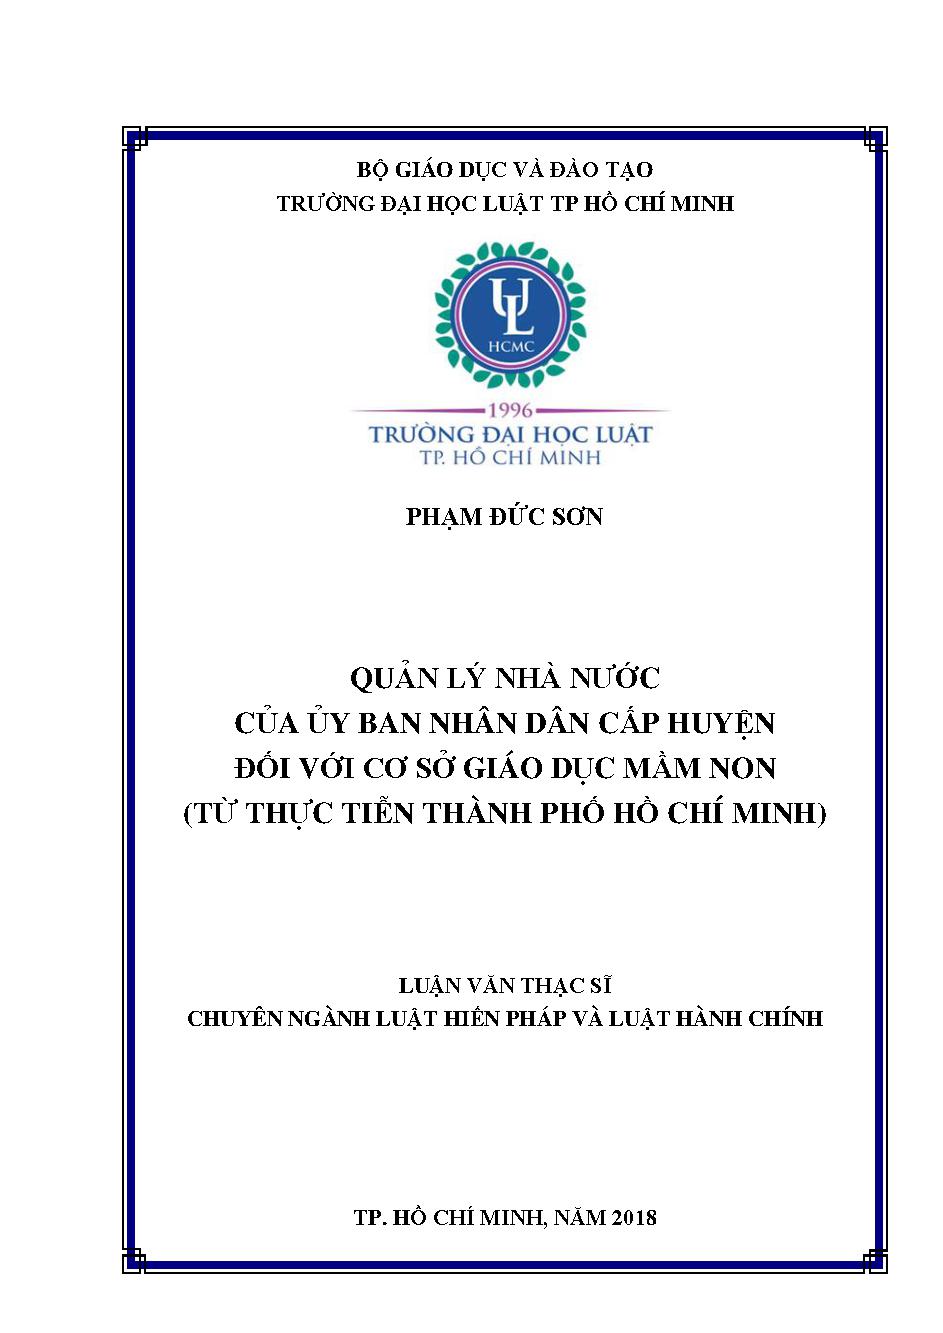 Quản lý nhà nước của Ủy ban nhân dân cấp huyện đối với cơ sở giáo dục mầm non (từ thực tiễn thành phố Hồ Chí Minh)